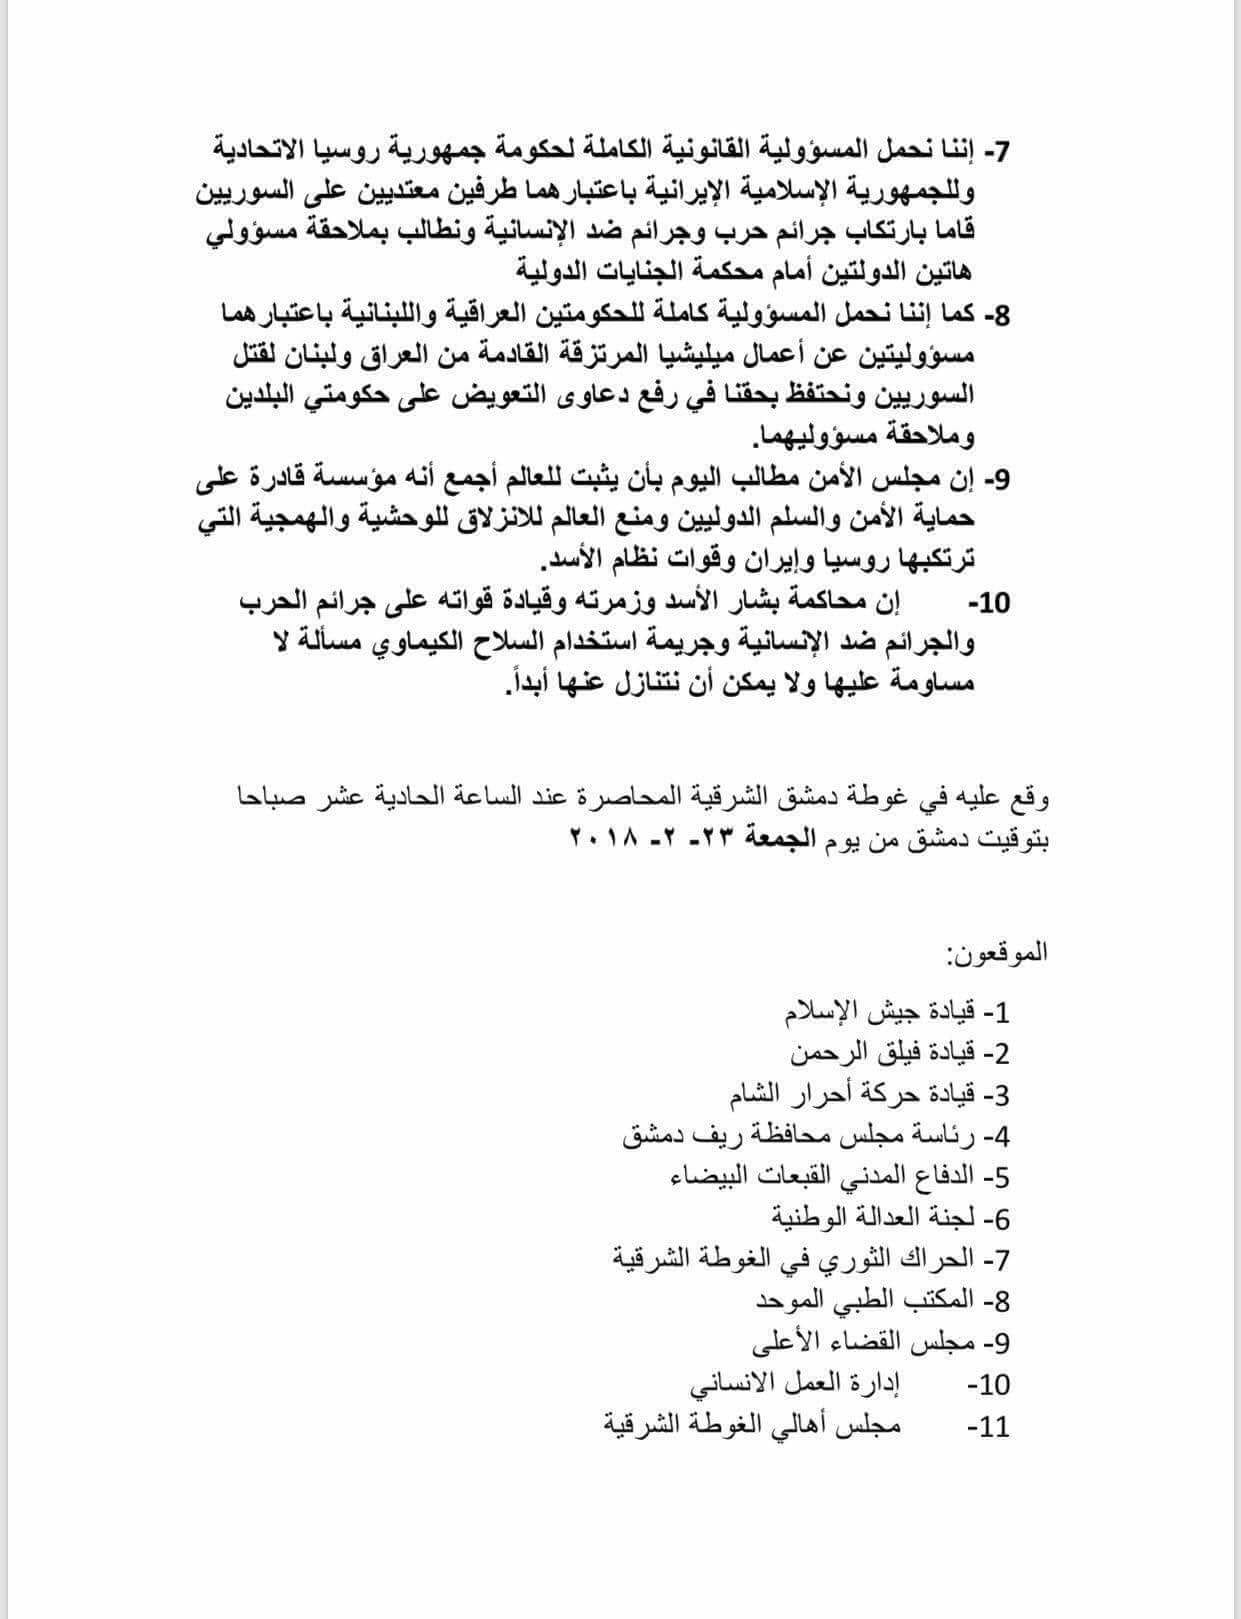 بيان فصائل الغوطة إلى مجلس الأمن - 23 شباط 2018 (تويتر)